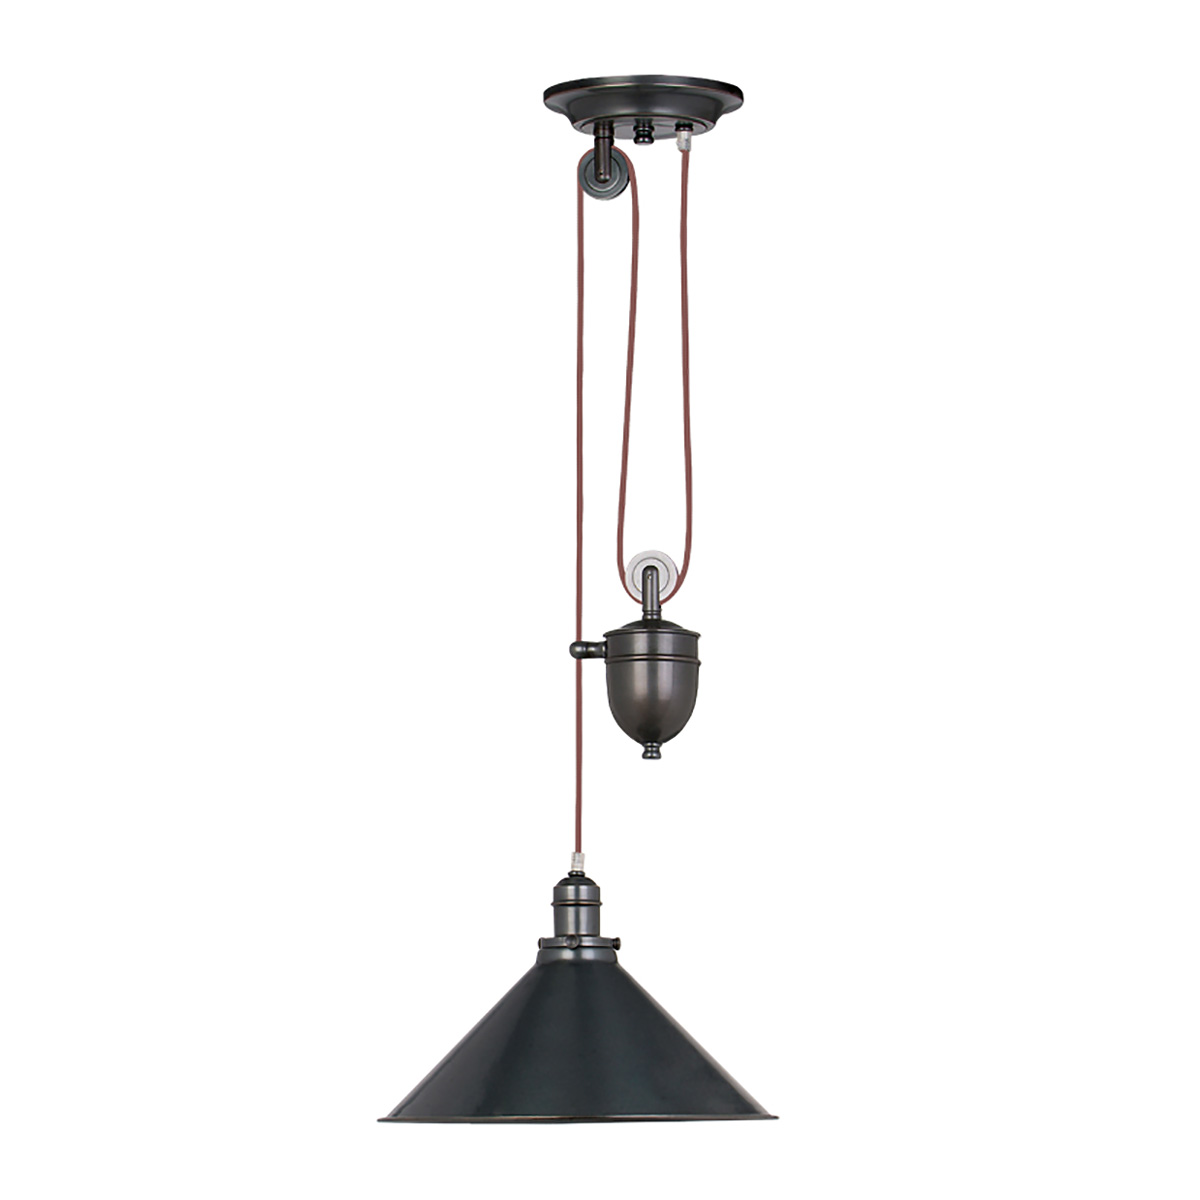 Подвесной светильник PV-P-OB, Подвесные светильники Хай-тек | Бронза | Прихожая, спальня, гостиная, столовая.